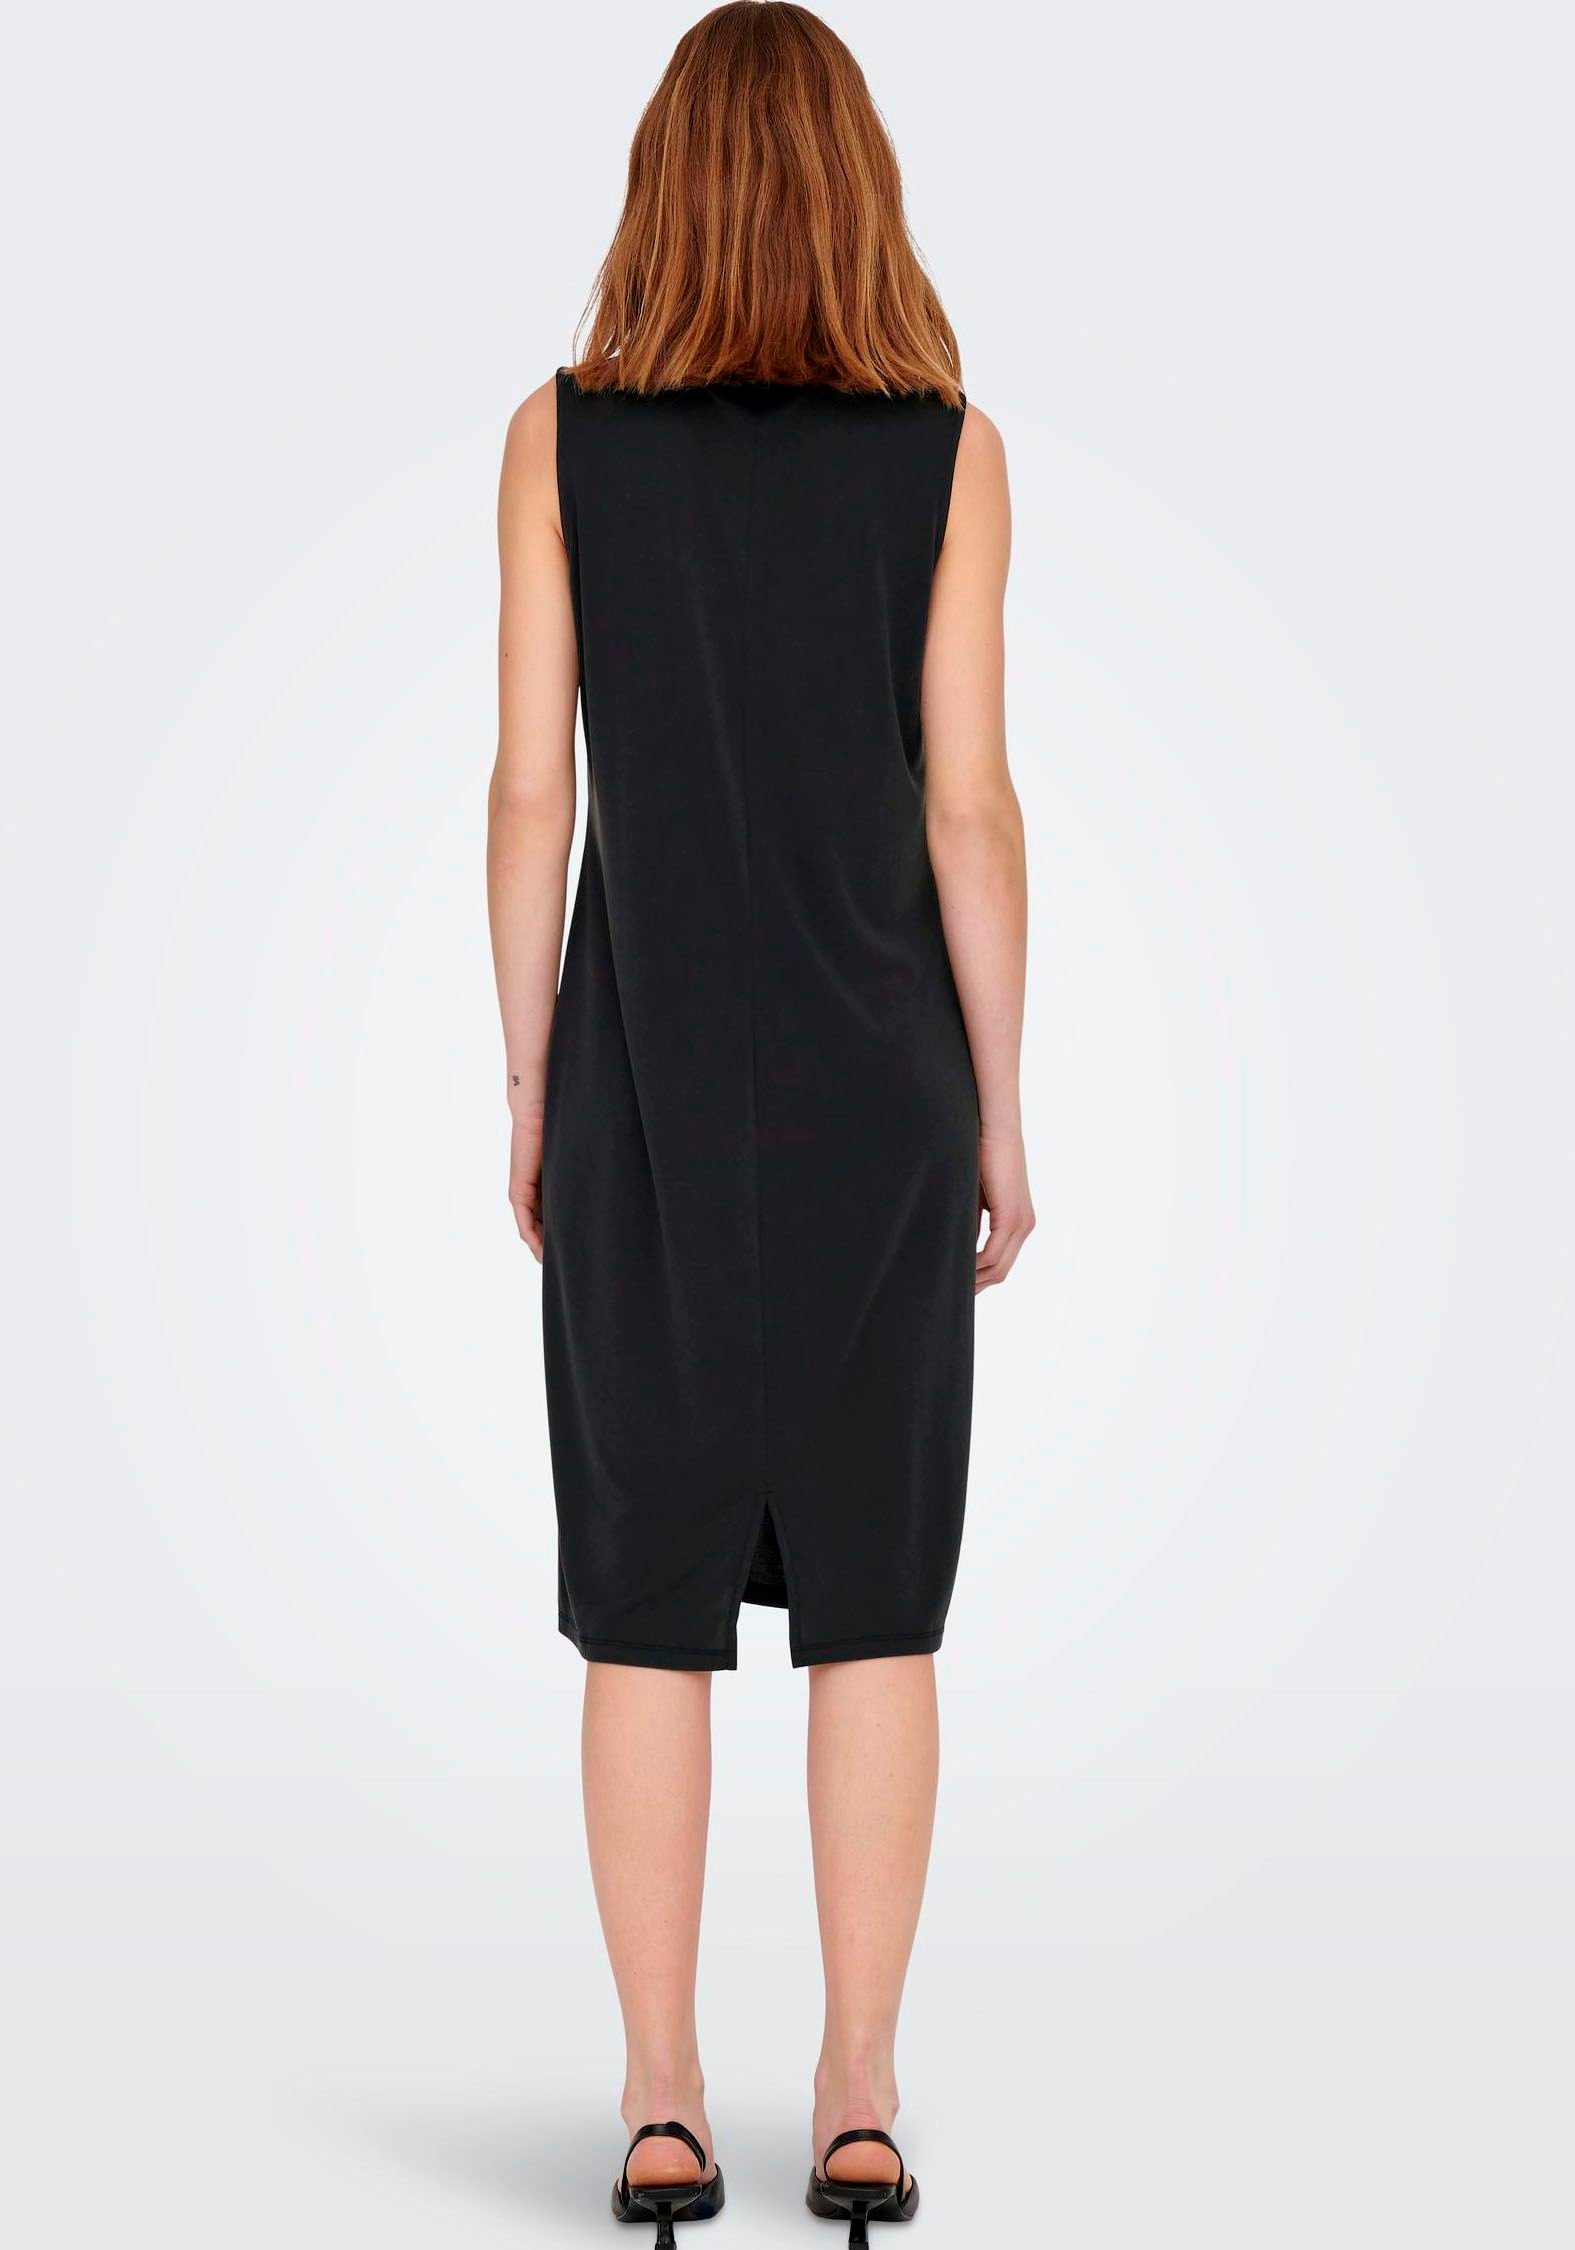 DRESS Jerseykleid Black NOOS ONLFREE MODAL ONLY Midi-Länge S/L JRS in